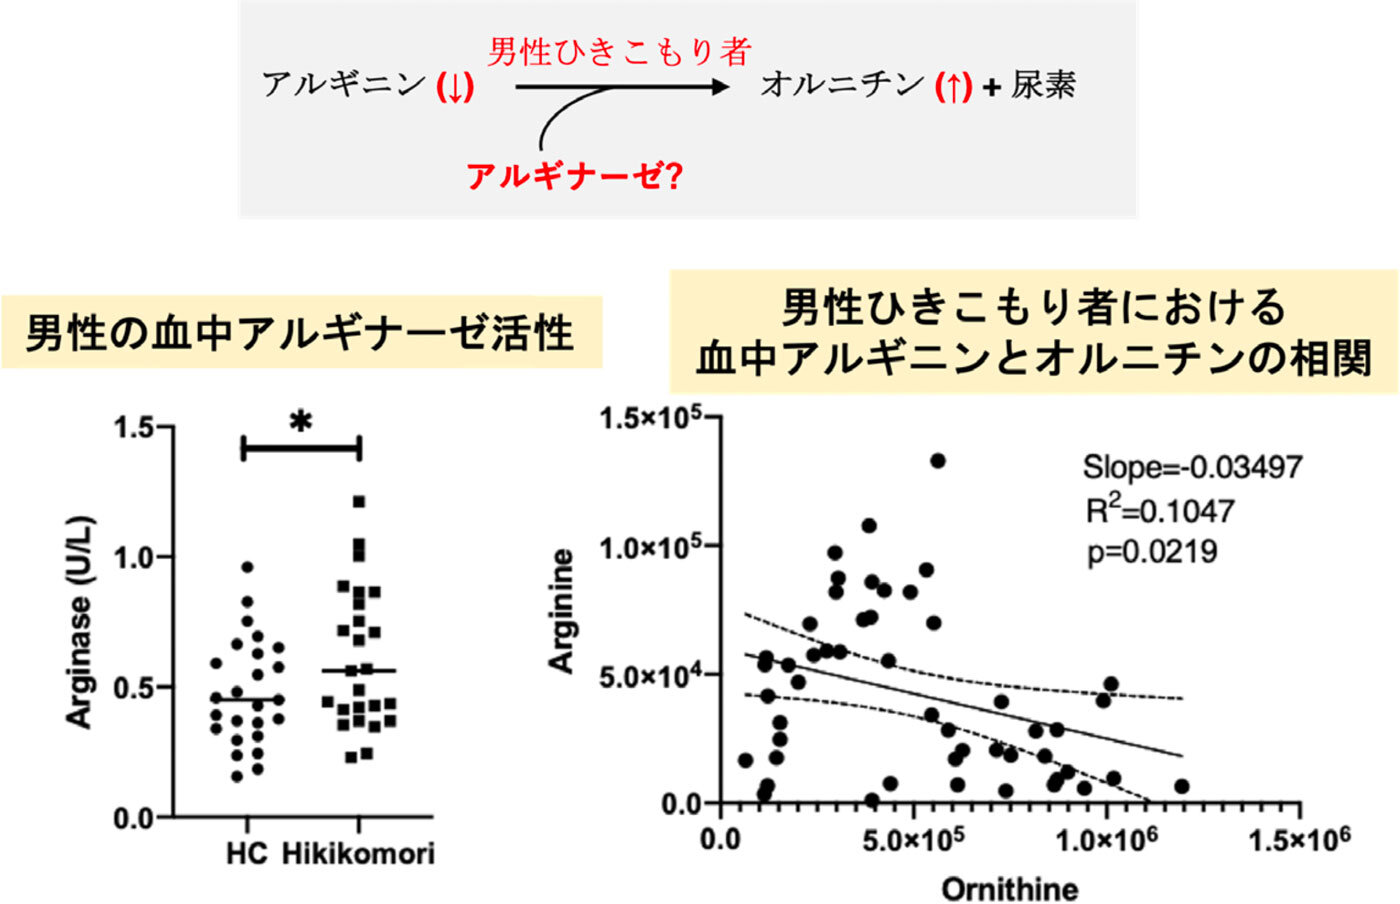 血中のアルギナーゼ活性の増加は男性のHikikomori患者を特徴づける血液指標である